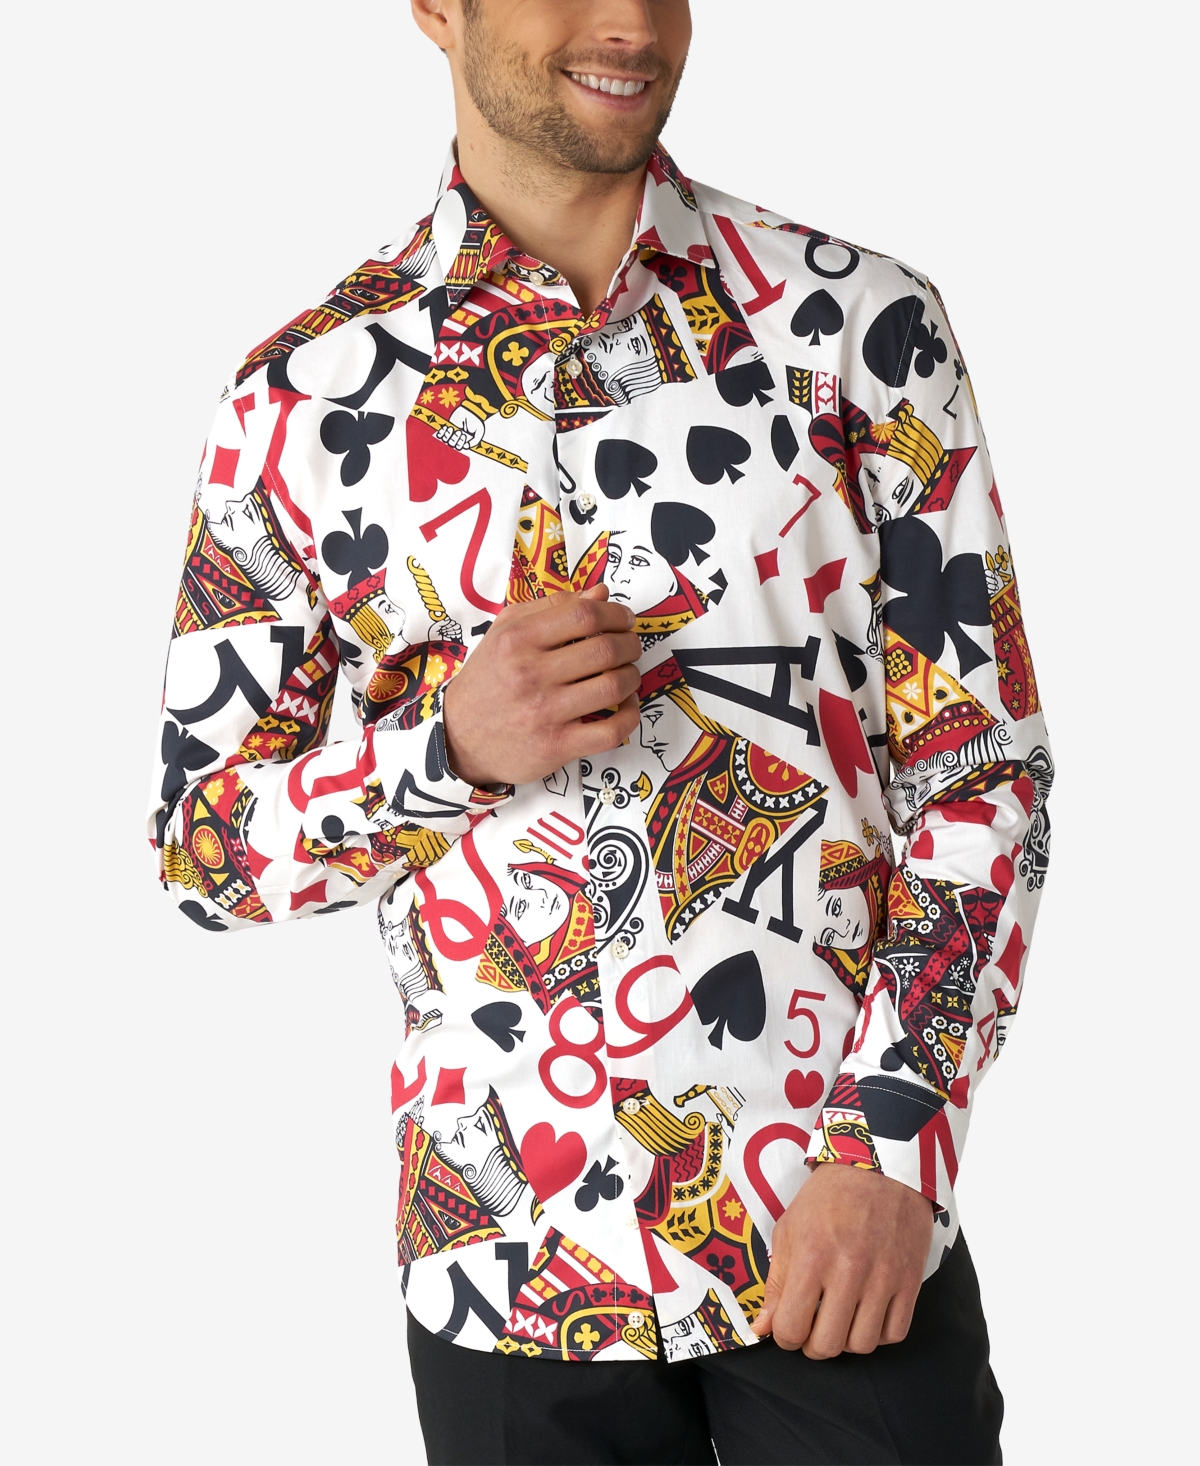 Men's King of Clubs Poker Casino Dress Shirt - Assorted